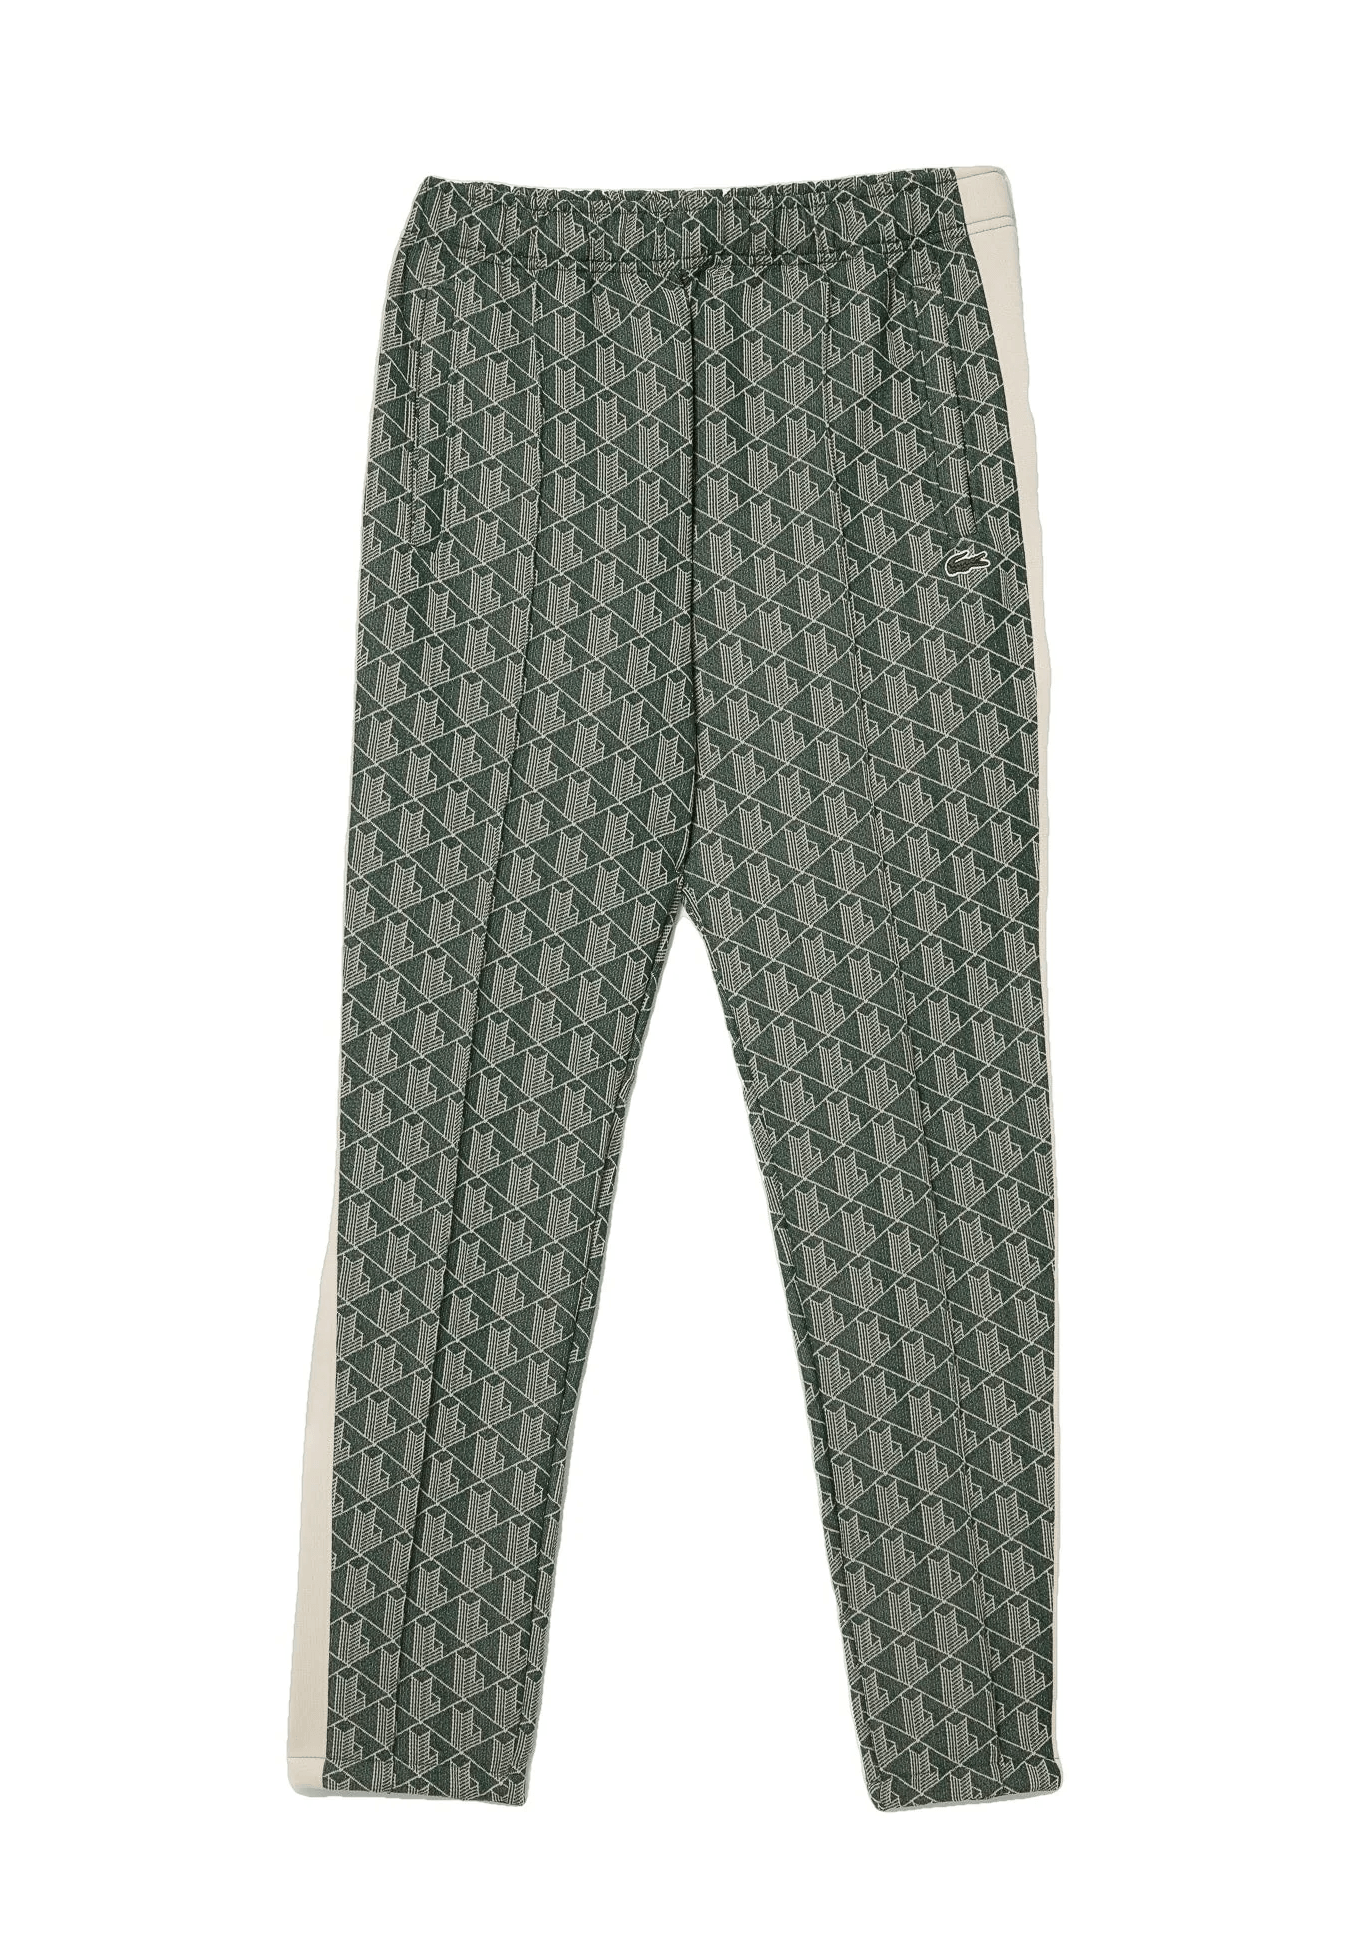 Lacoste Pantalon de survêtement vert imprimé monogramme - Lothaire